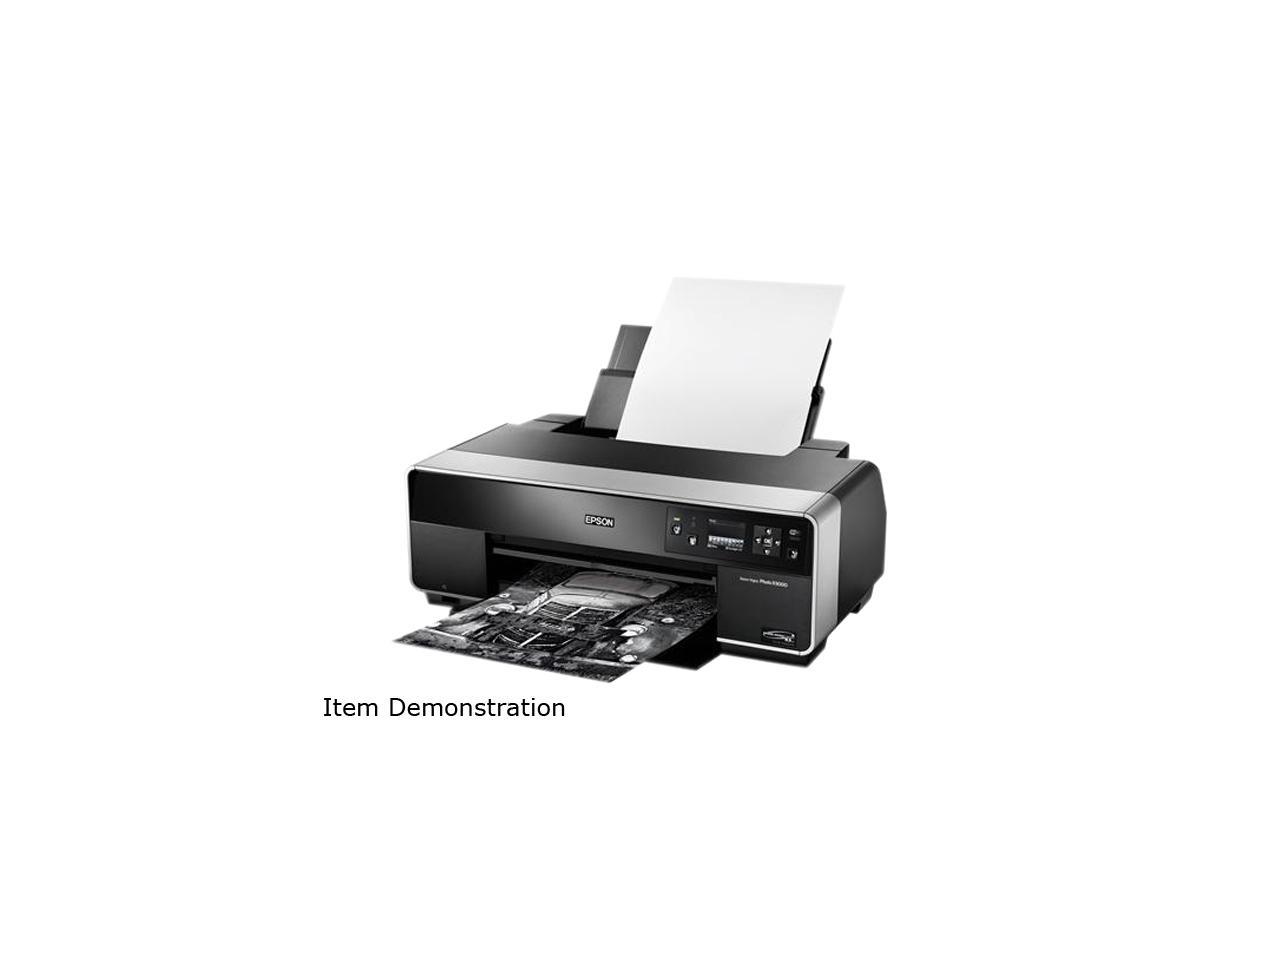 epson stylus photo r3000 printer review